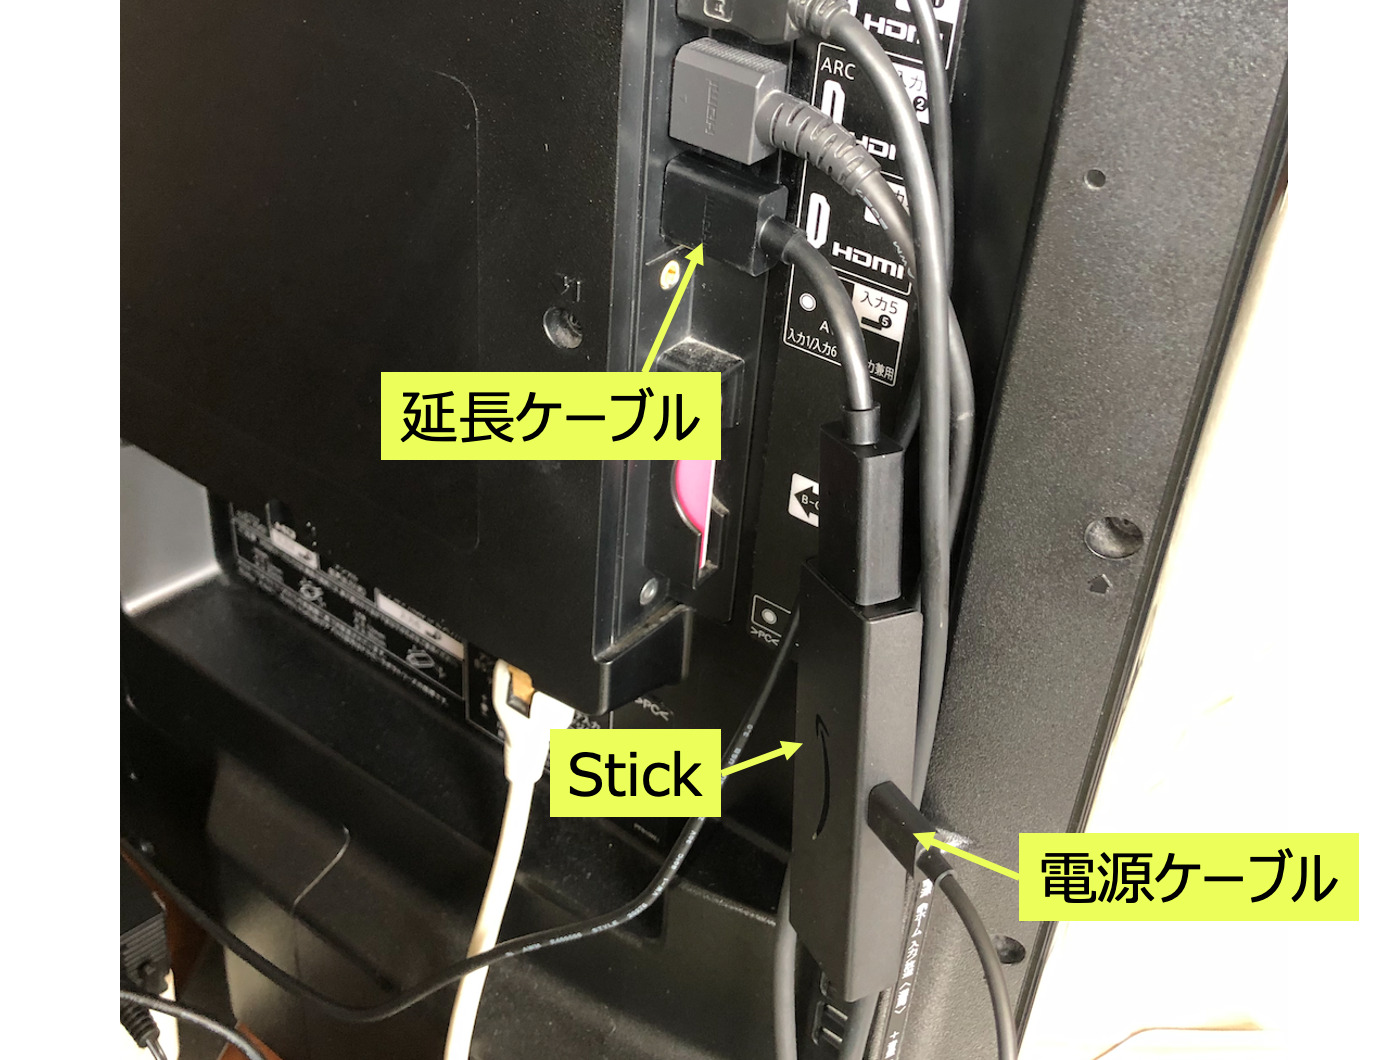 Stickのテレビ接続2